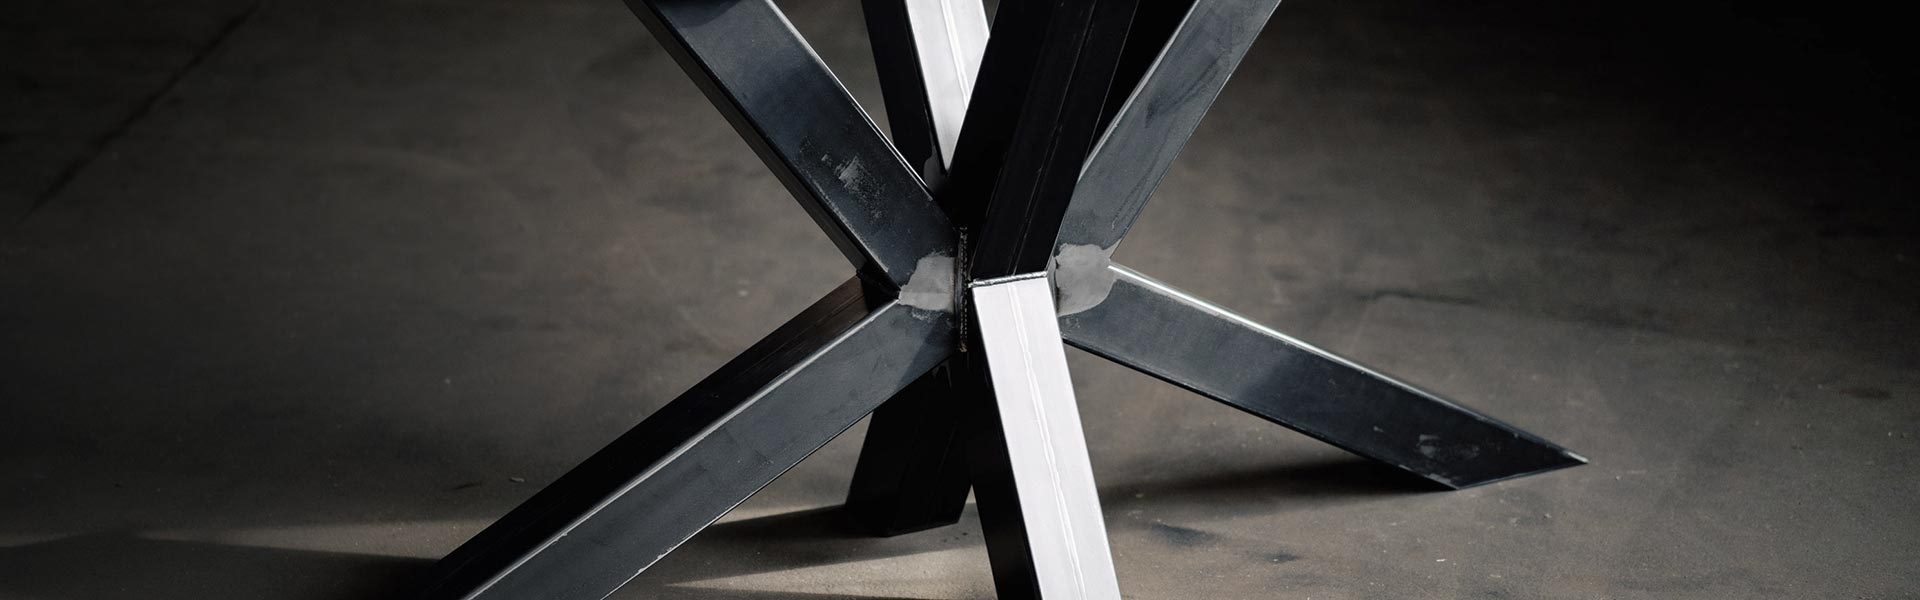 Kreuz-Tischgestelle aus Metall und Holz